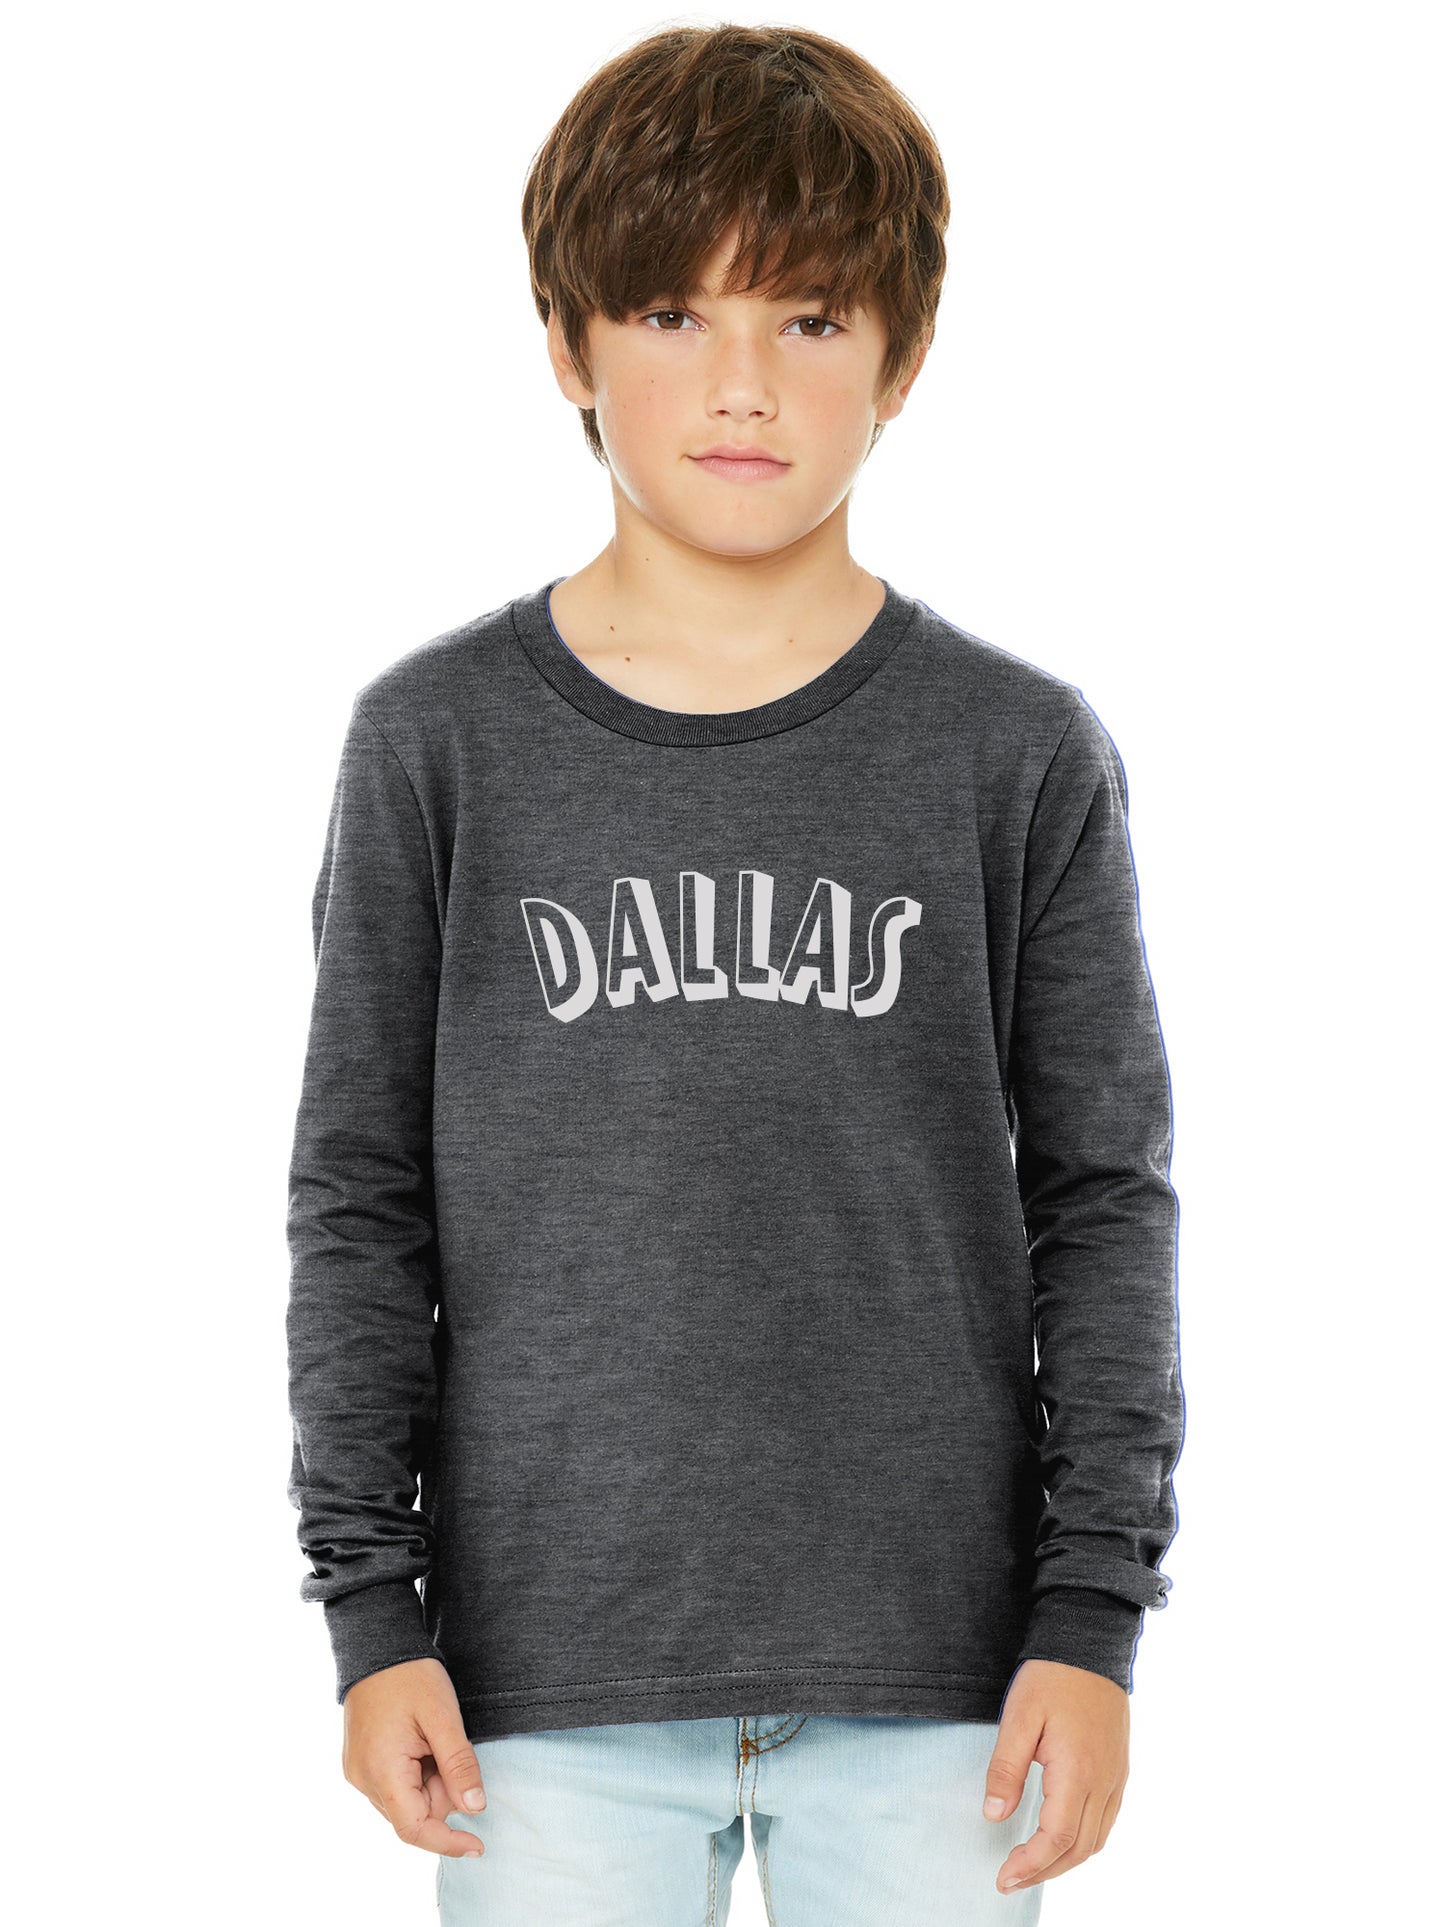 Daxton Youth Long Sleeve Dallas Basic Tshirt